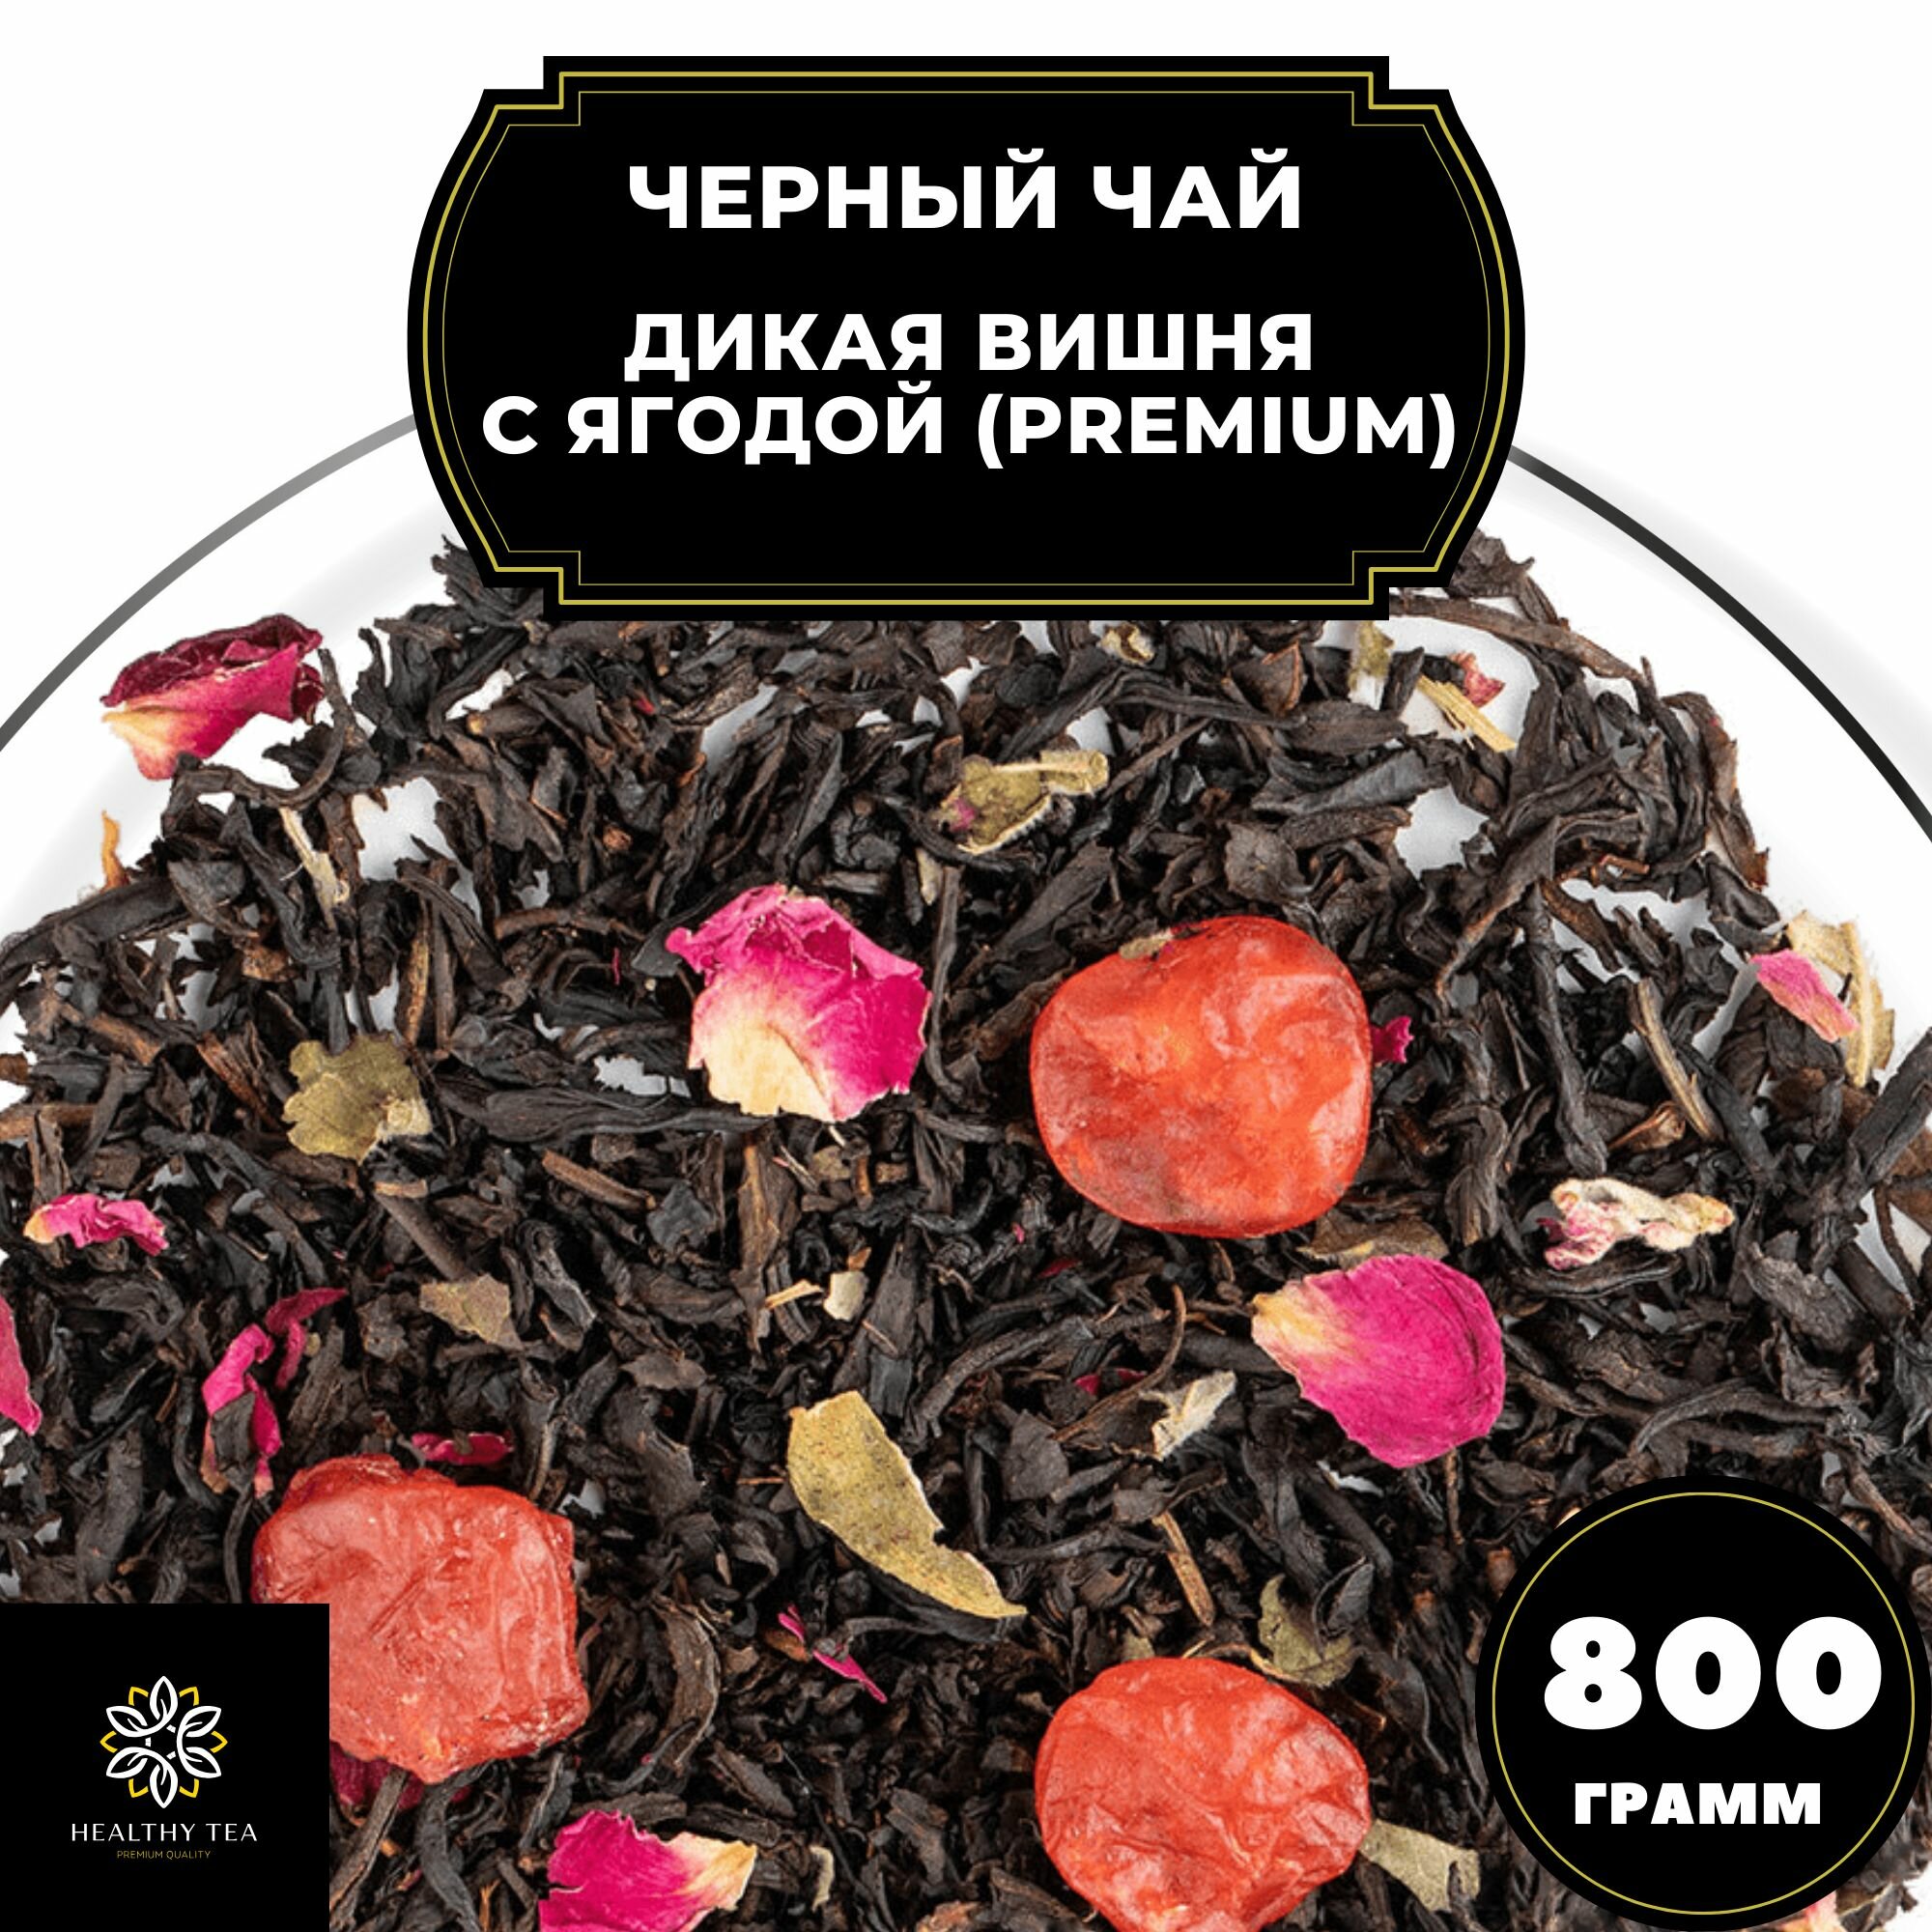 Китайский Черный чай с вишней и розой "Дикая вишня с ягодой" (Premium) Полезный чай / HEALTHY TEA, 800 гр